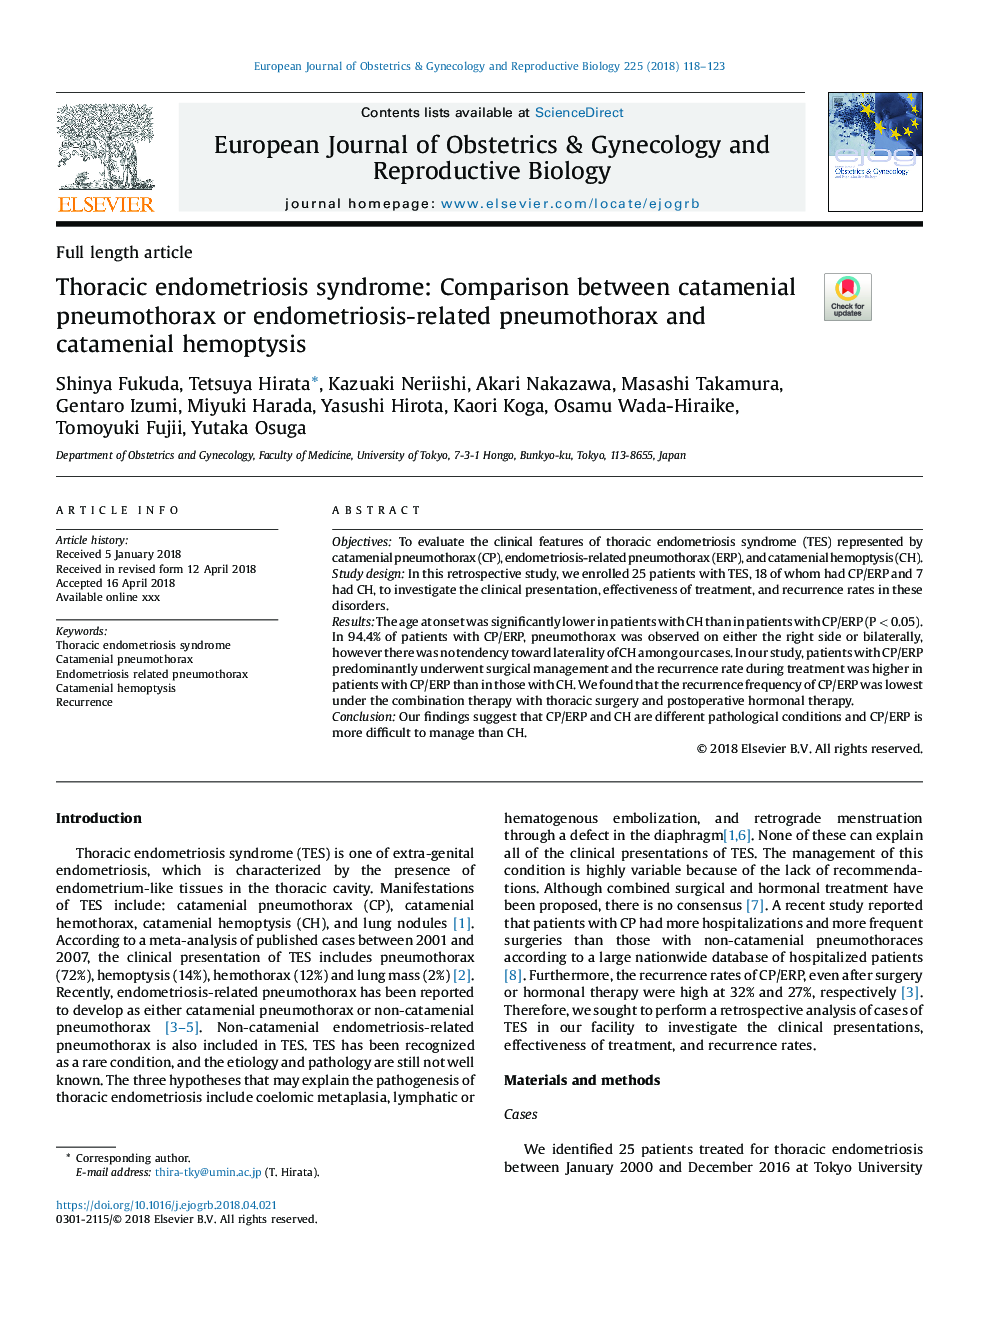 سندرم اندومتریوز توراسیک: مقایسه بین پنوموتوراکس کاتامنیال یا پنوموتوراکس مرتبط با آندومتریوز و هموپتیز کاتامنی 